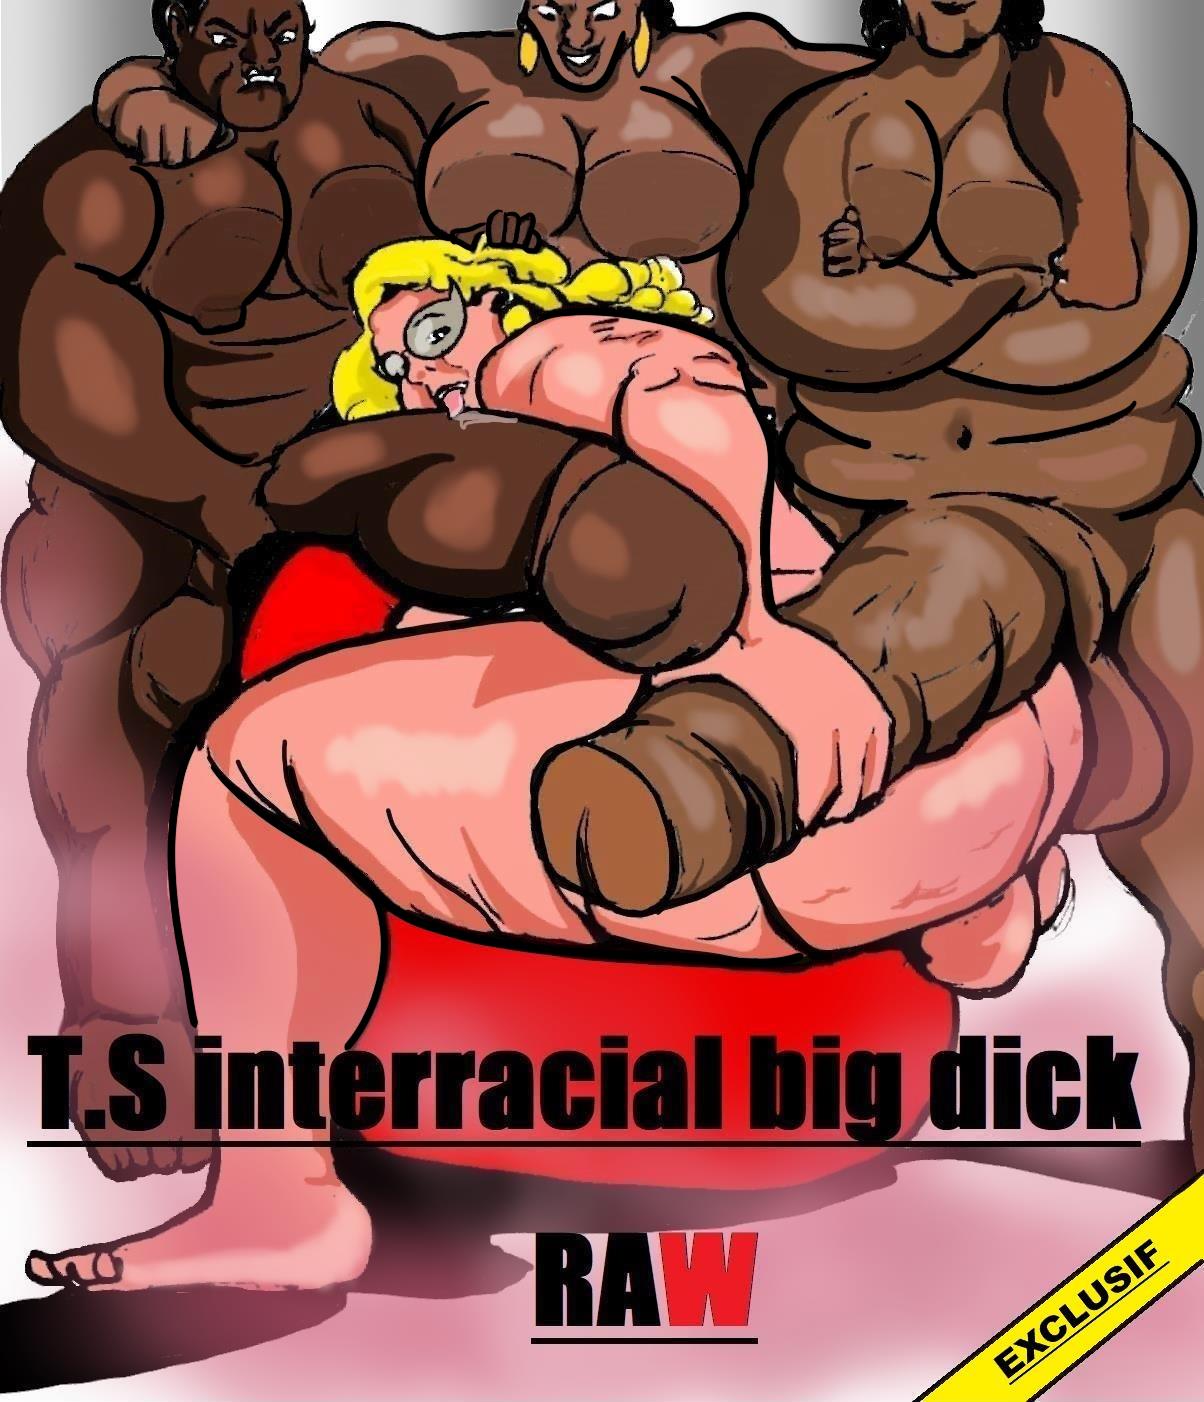 Shemale Cartoons With Big Dicks - Shemale Interracial Big Dick Raw- Carter Tyron - Porn Cartoon Comics